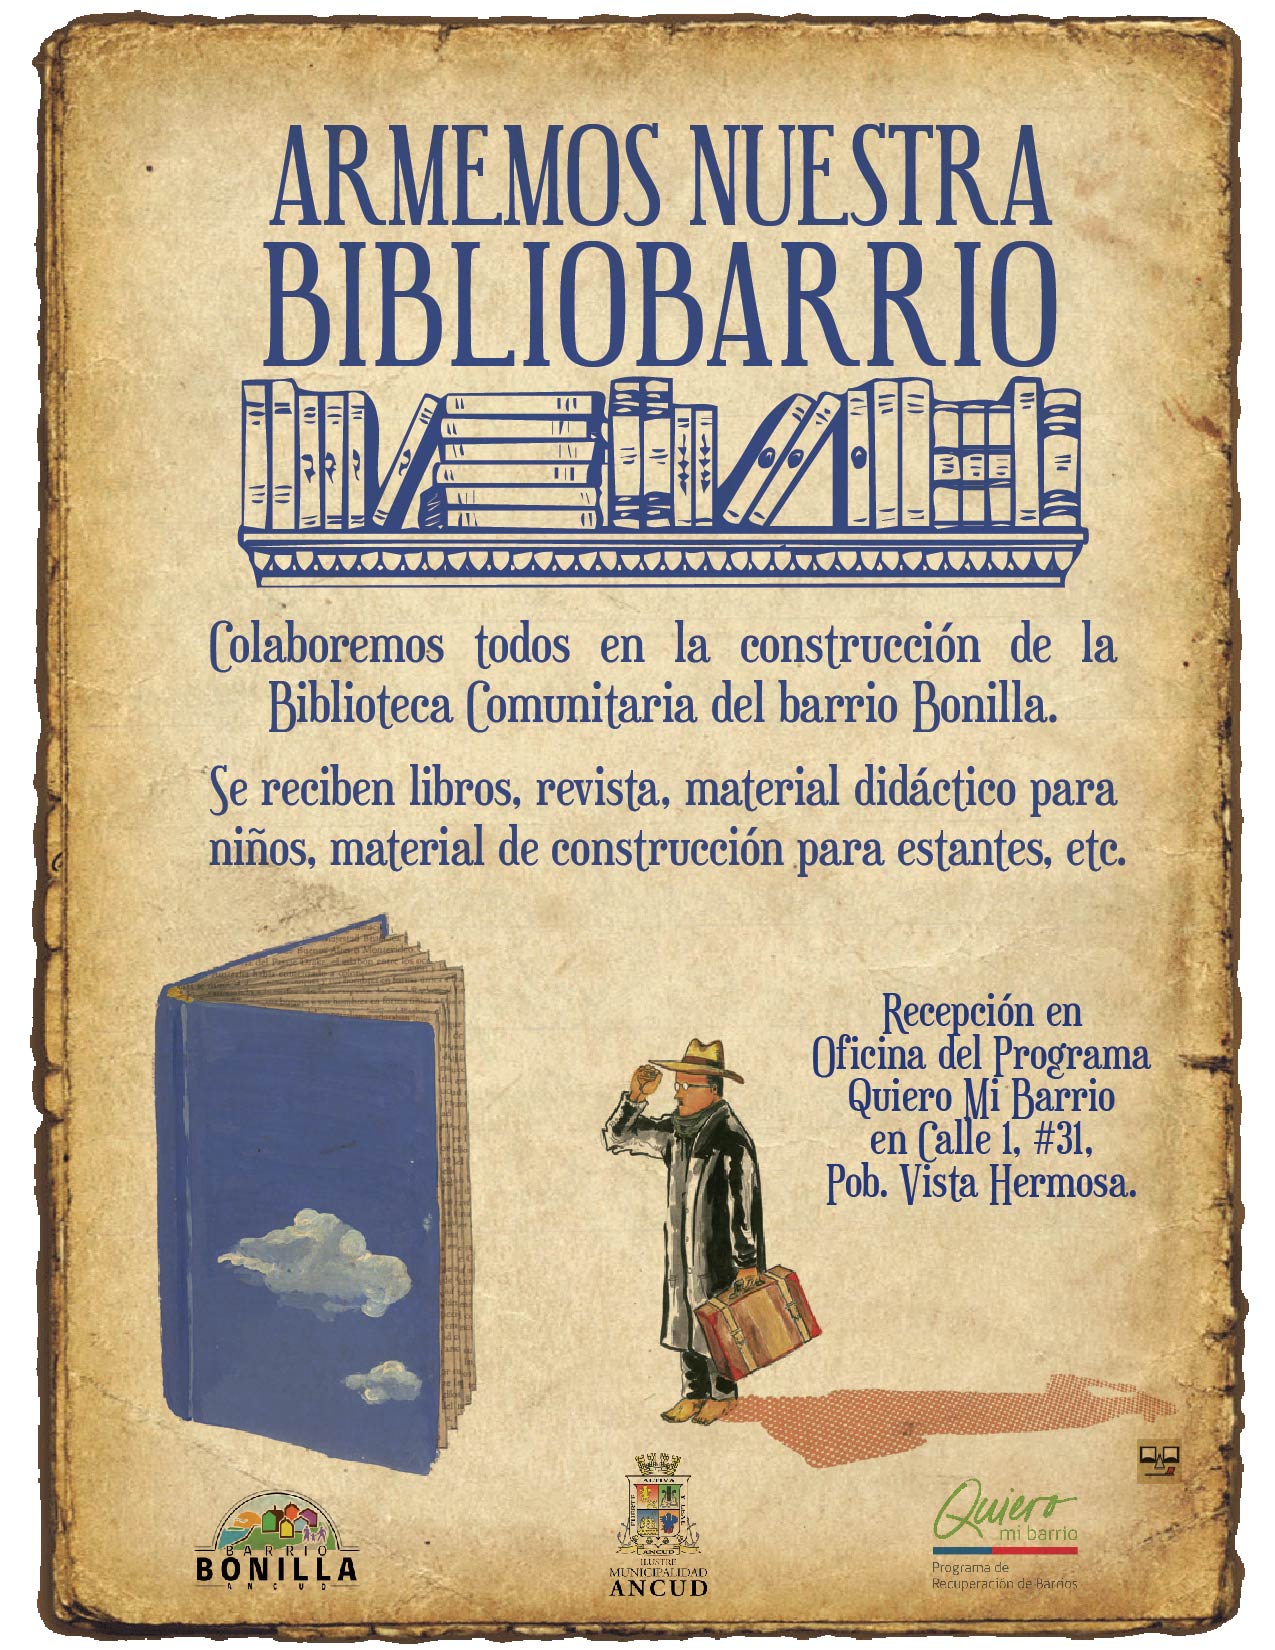 ¡Llenemos de vida la “Bibliobarrio”!